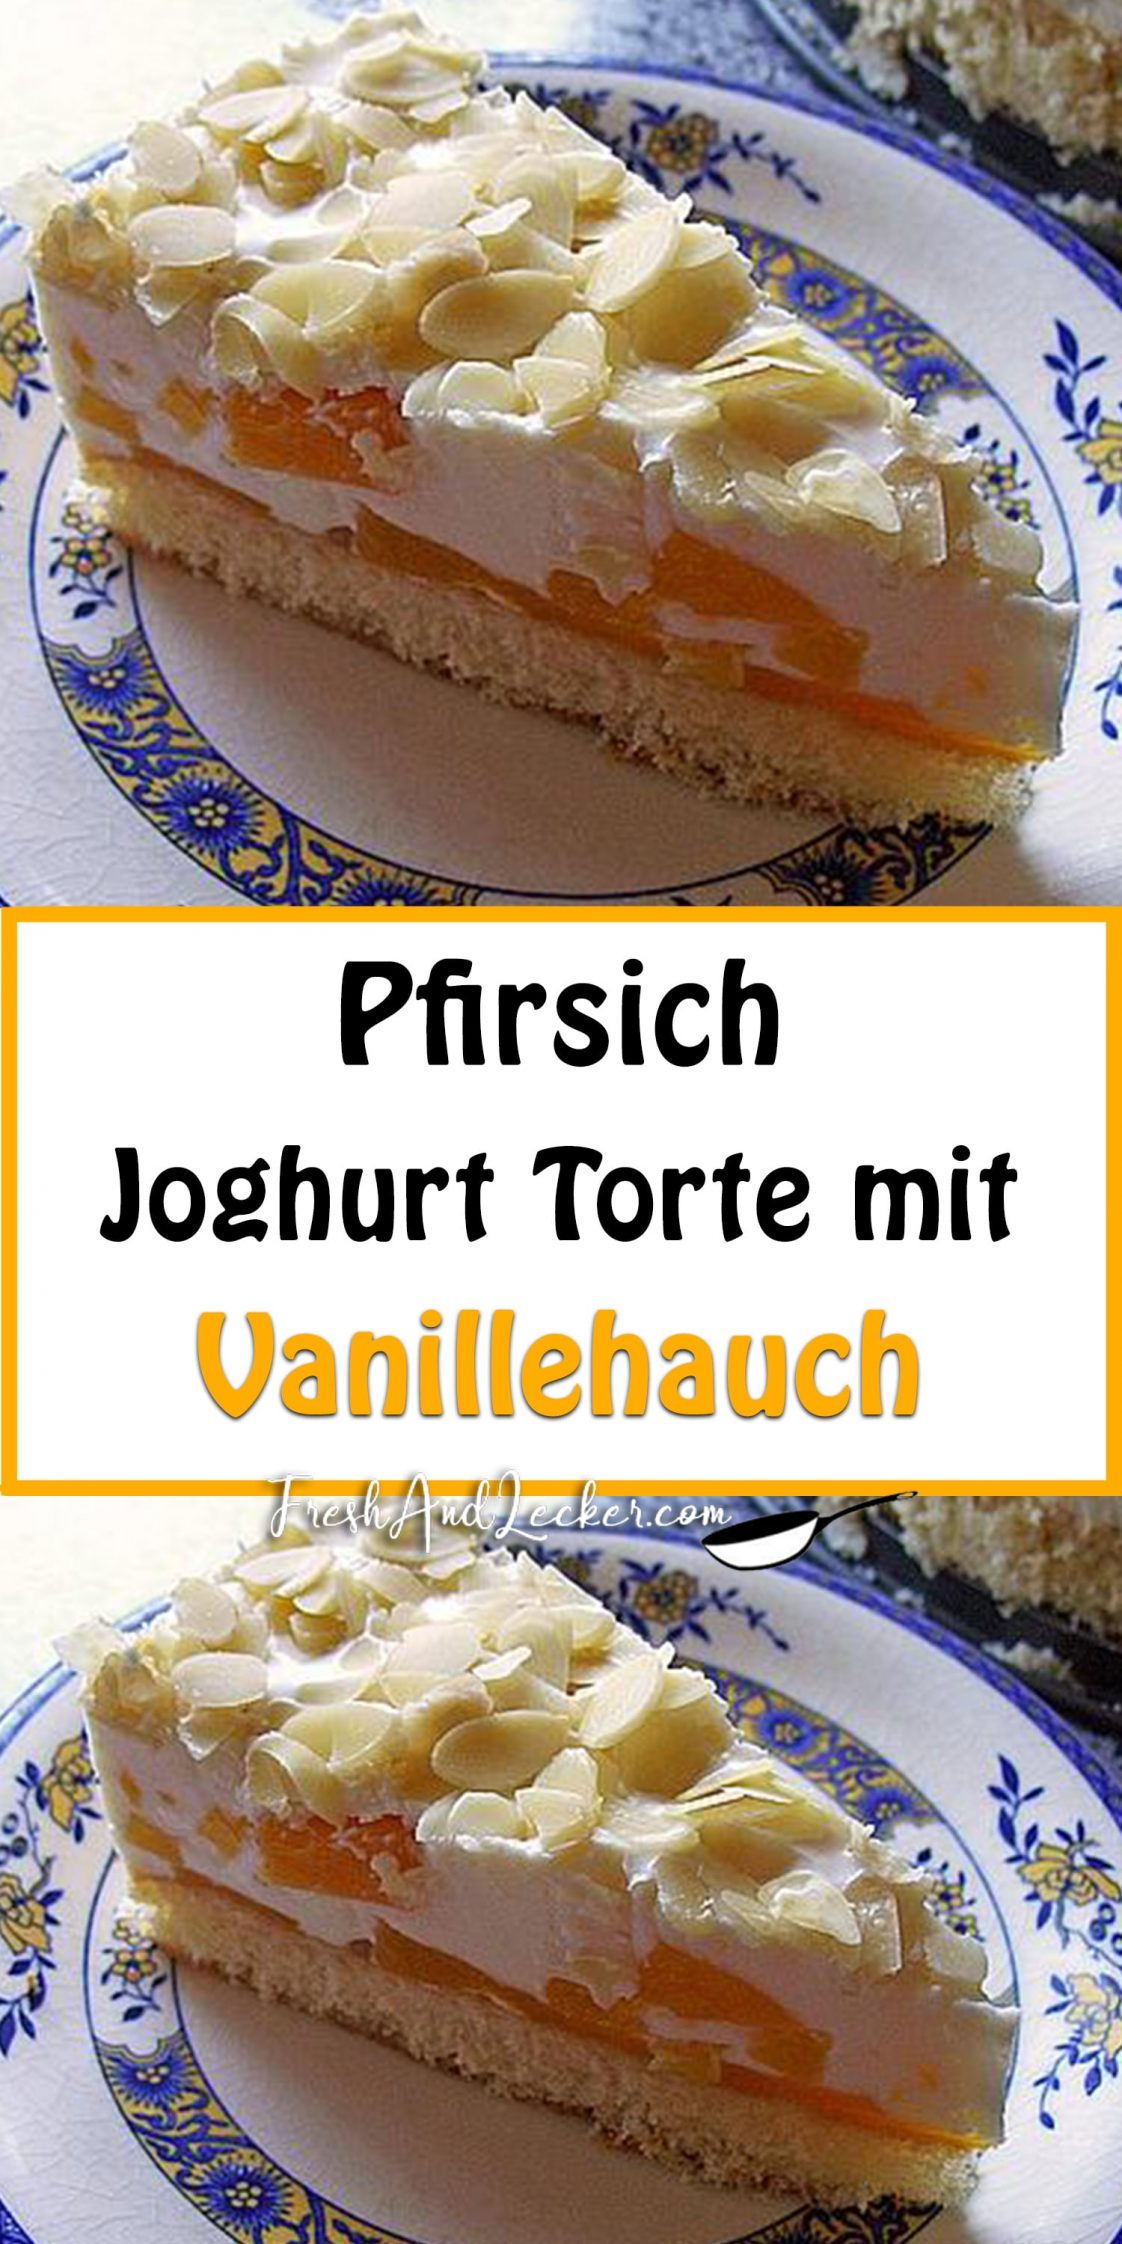 Pfirsich - Joghurt Torte mit Vanillehauch - Fresh Lecker